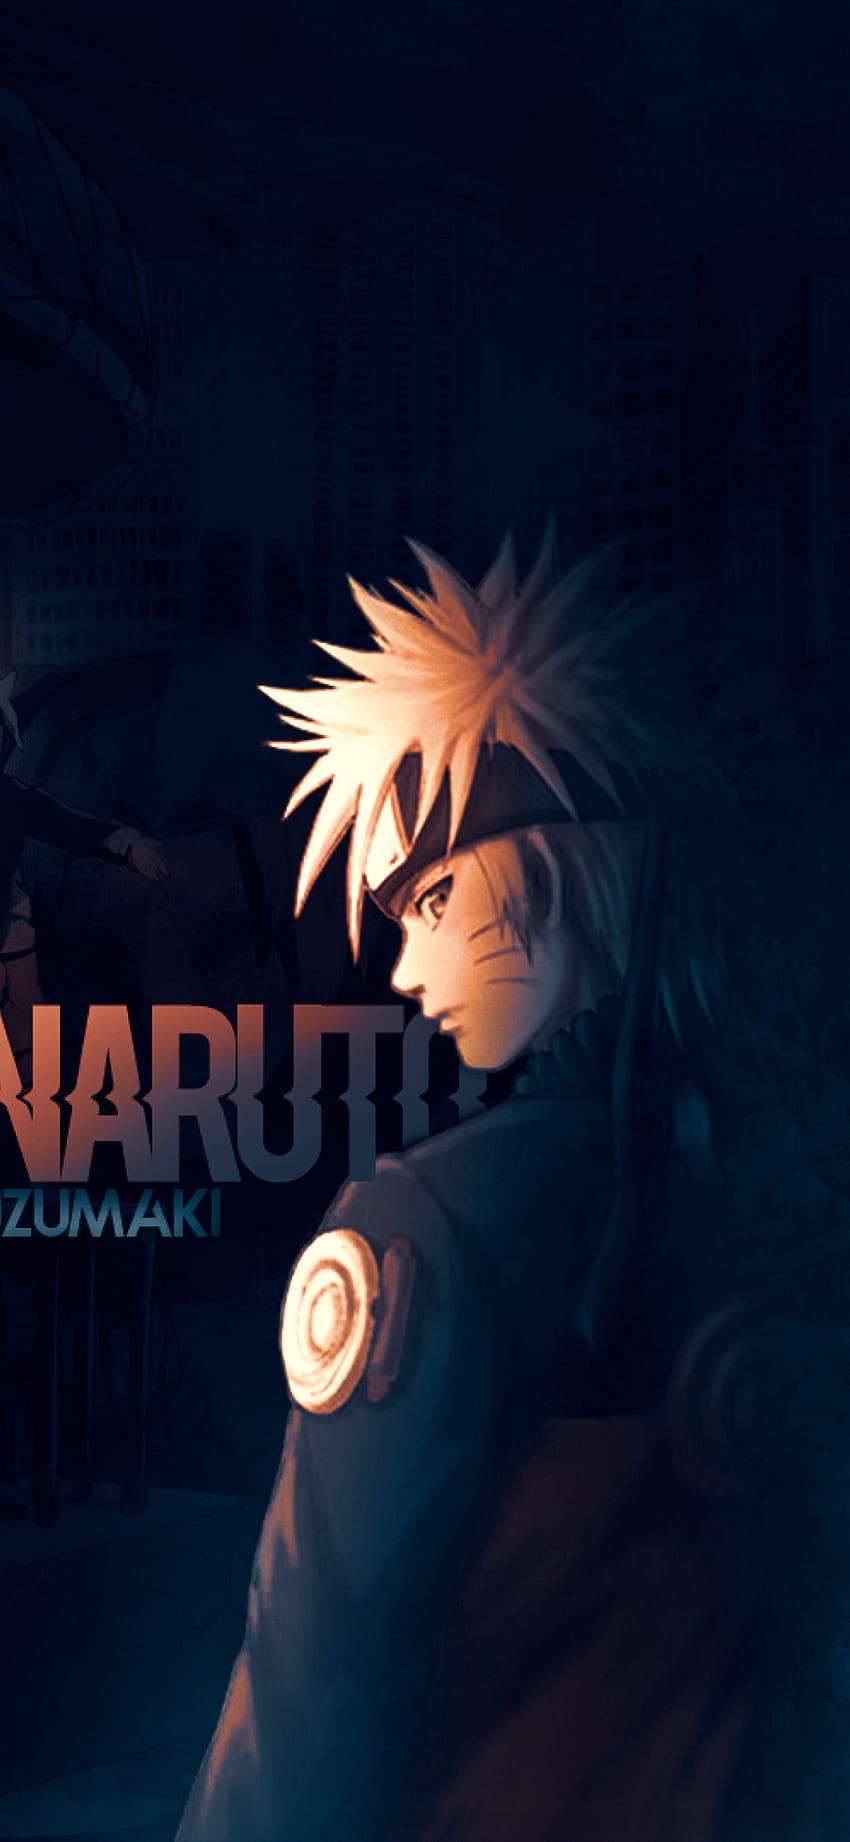 Cùng đón chào Naruto Uzumaki - một chiến binh siêu cấp mang trên mình bản tính siêu phàm. Banner mới của Naruto Uzumaki sử dụng gam màu tối và quyến rũ để thoát khỏi những đối thủ khó khăn cùng sự quyết tâm và sự gan dạ của Naruto. Hãy xem theo và cảm nhận sức mạnh Naruto.